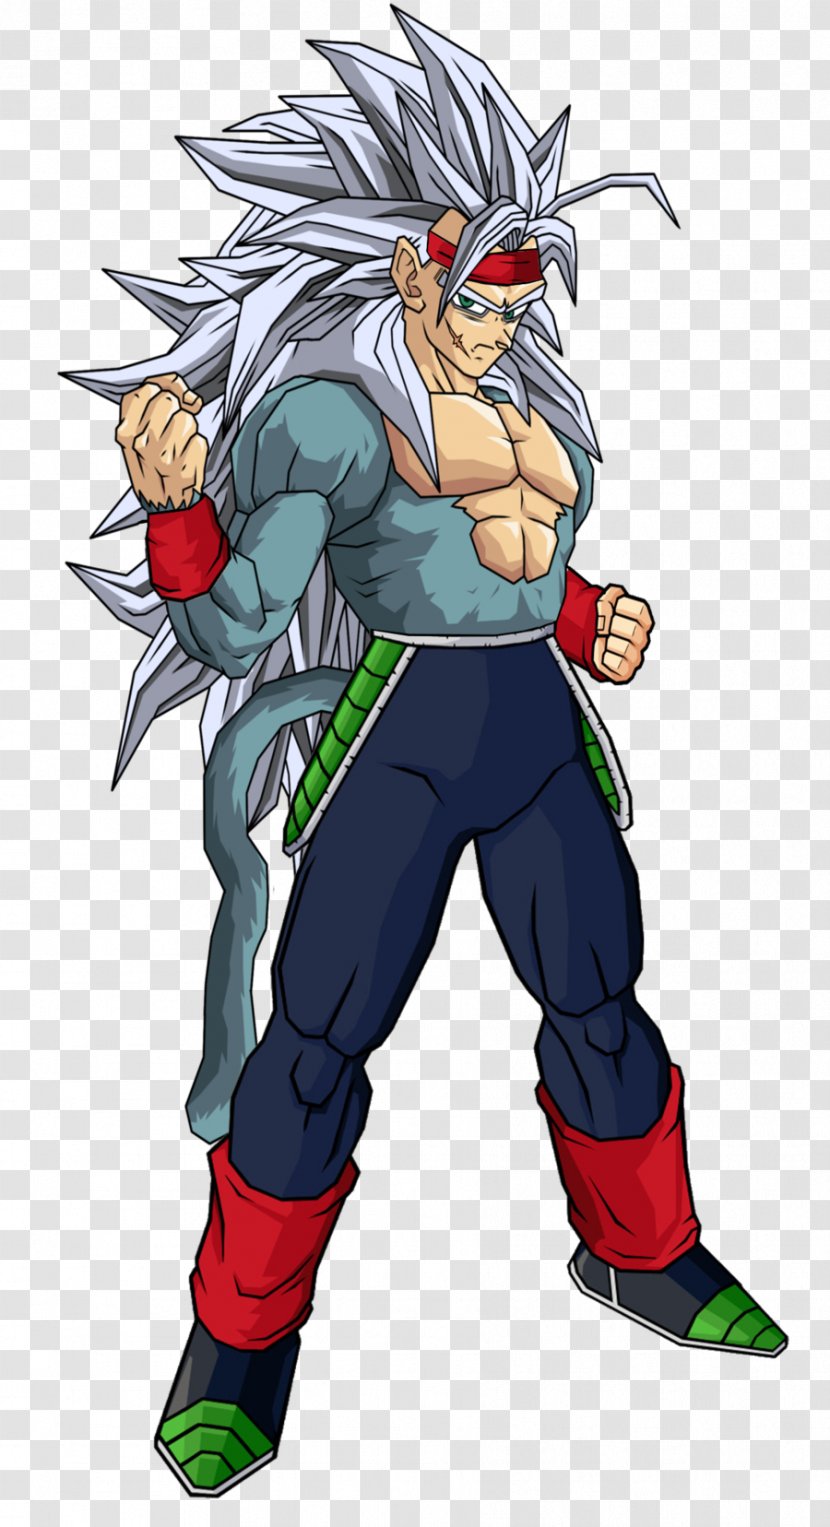 Bardock Goku Frieza Super Saiyan - Frame Transparent PNG